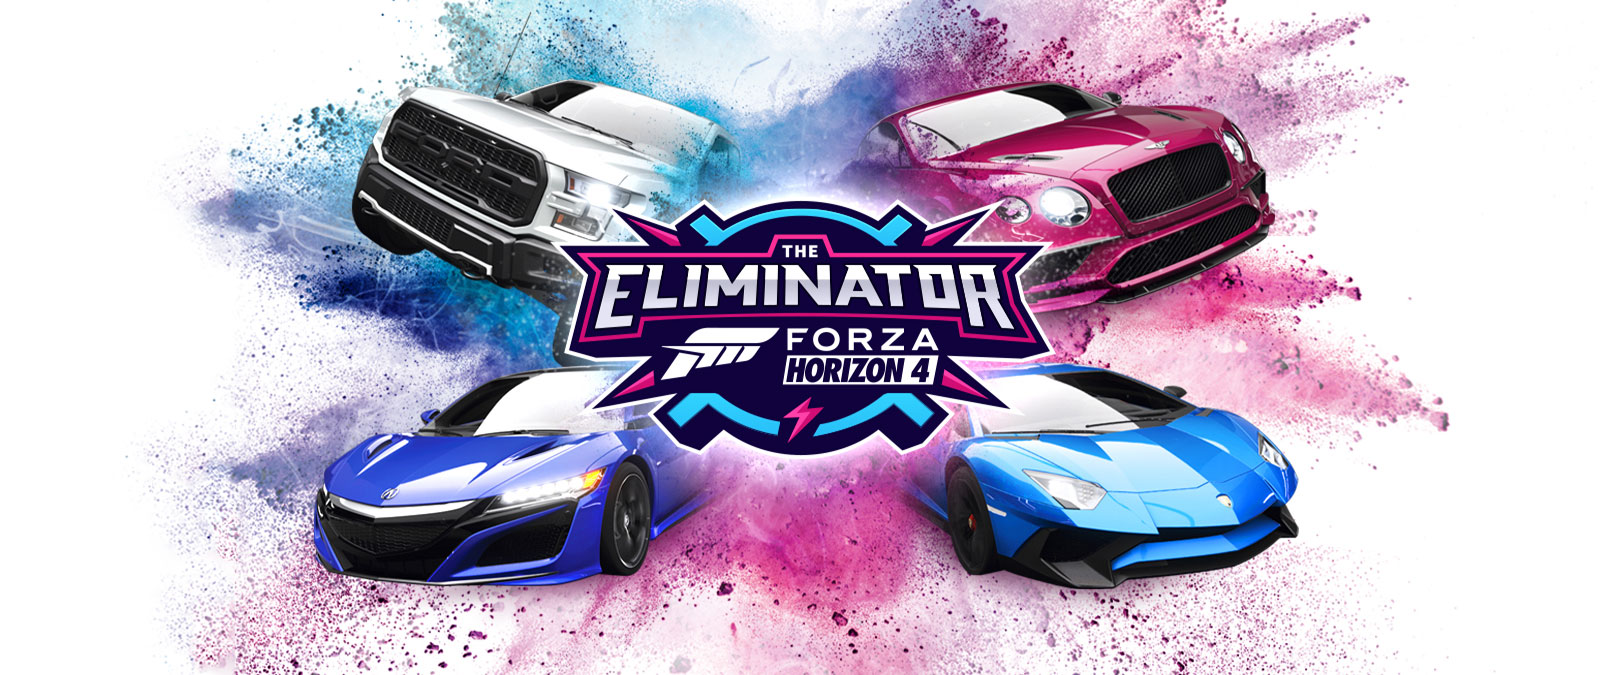 The Eliminator, el logo de Forza Horizon 4, cuatro autos con polvo azul y rosa a su alrededor